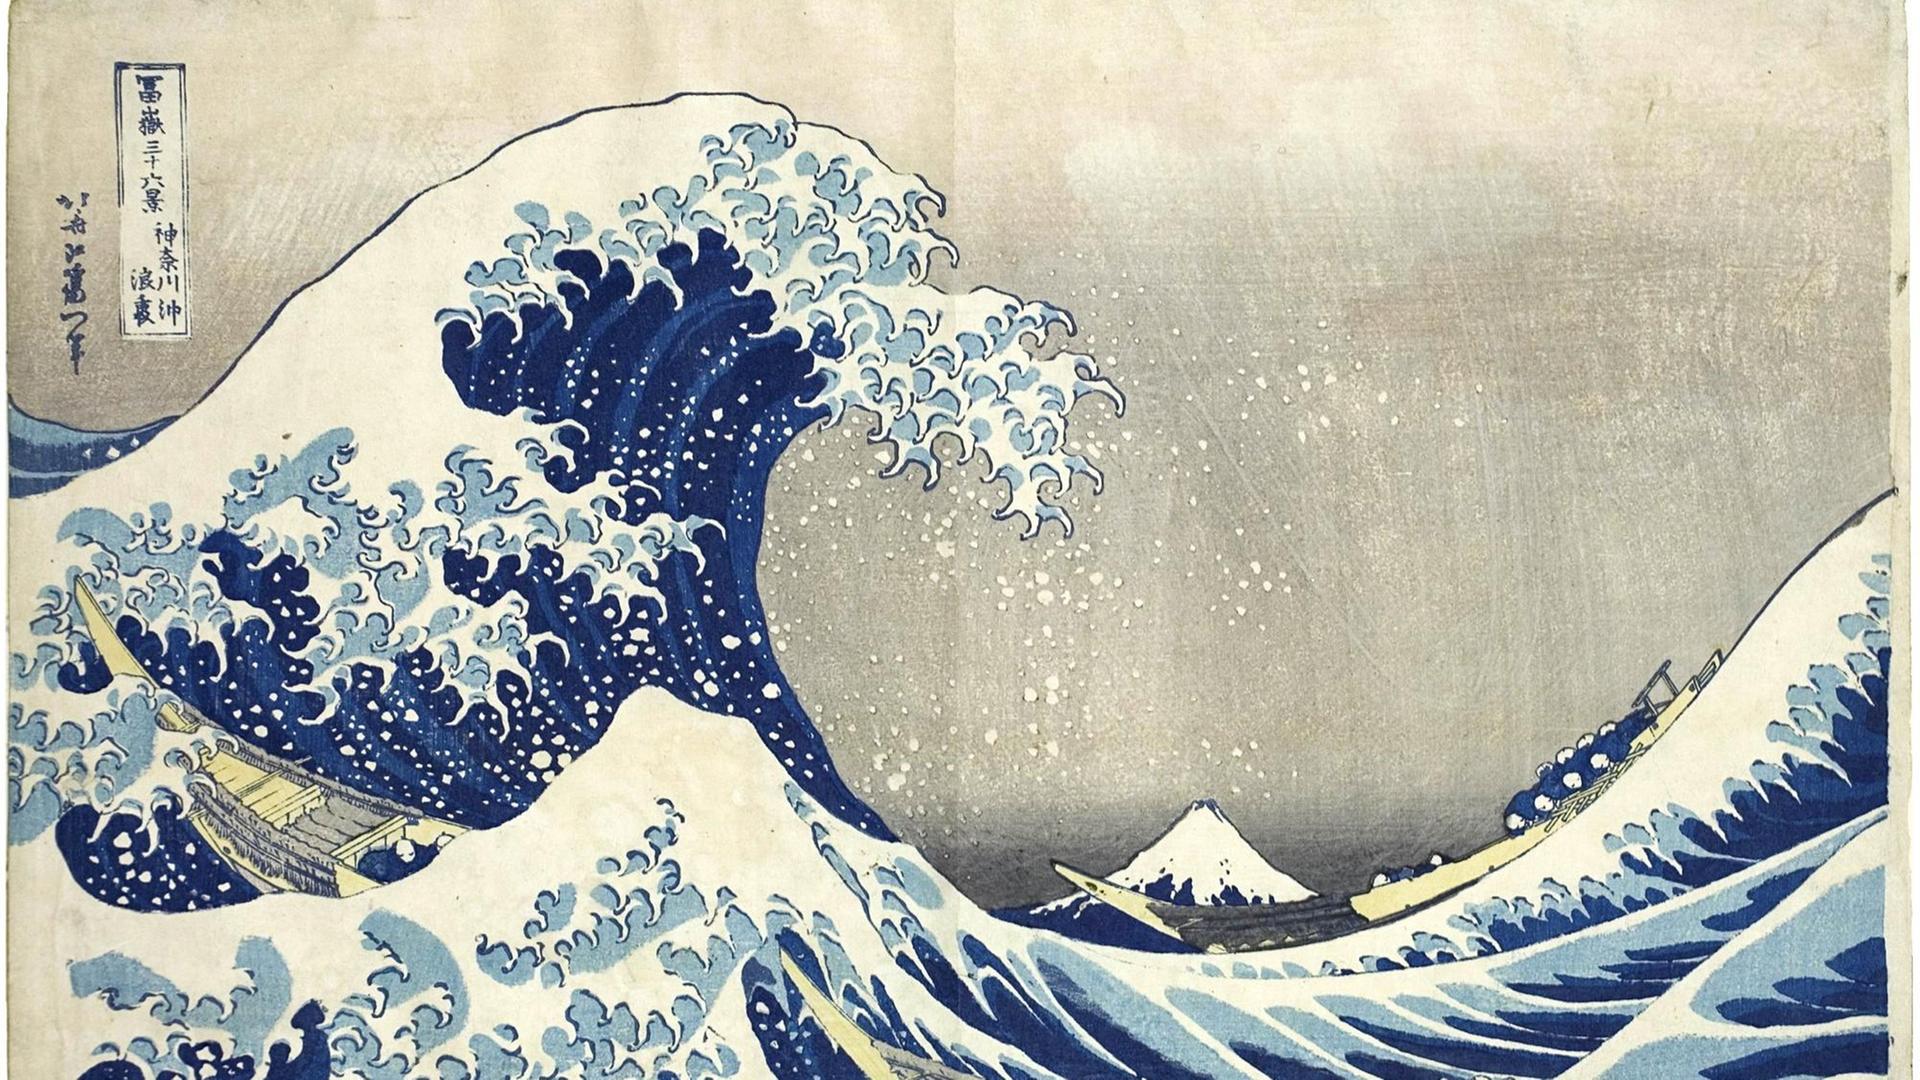 Das undatierte Handout zeigt den Holzschnitt "Unter der Woge vor der Küste von Kanagawa" des japanischen Künstlers Katsushika Hokusai (1760-1849).